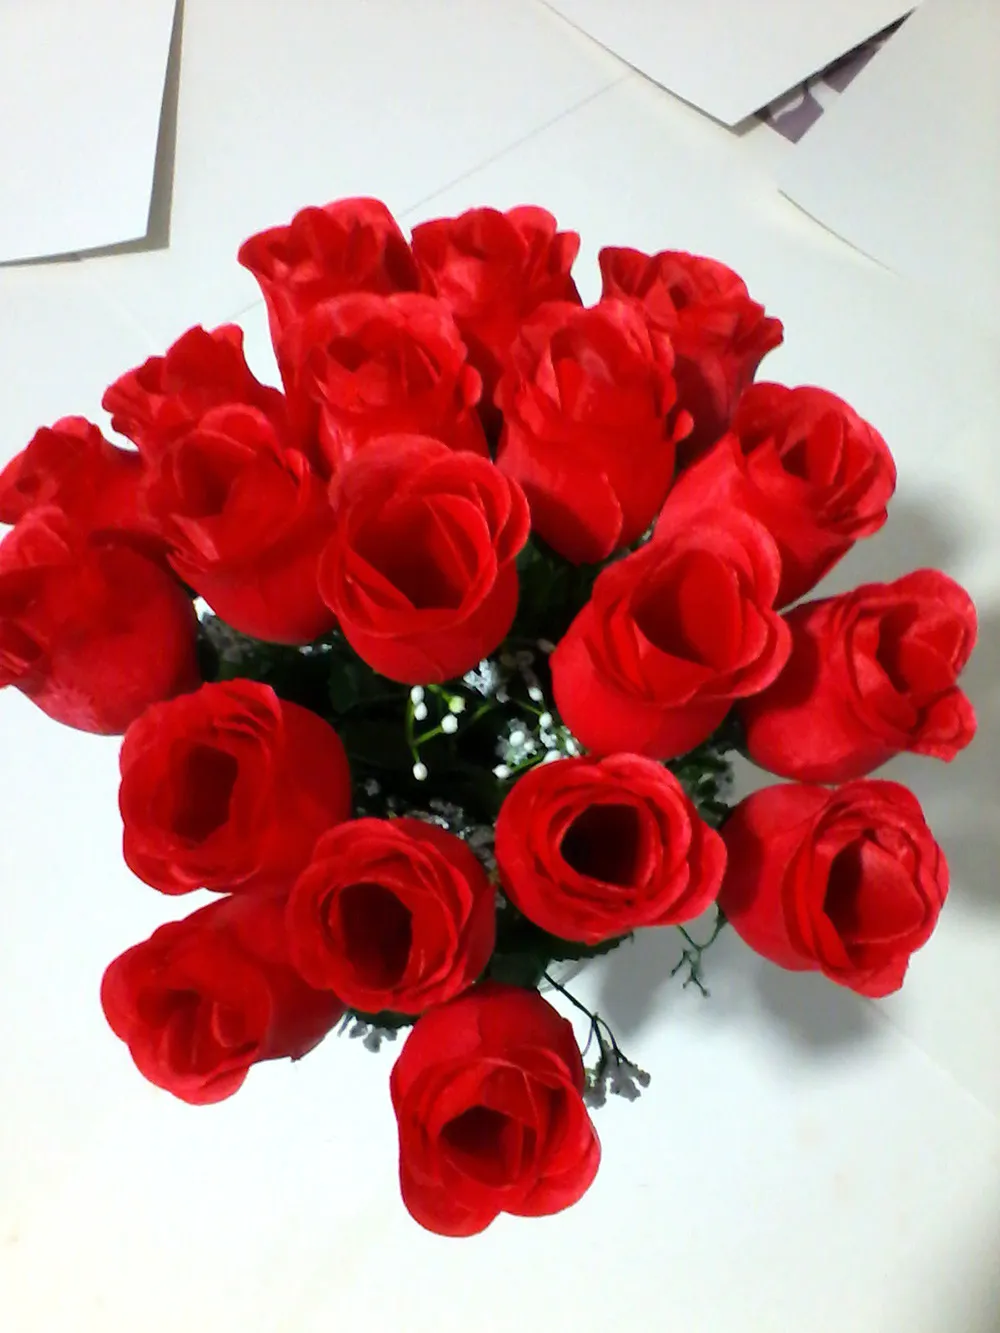 es hermosas flores rosas artificiales suministros de decoración del hogar fiesta festiva Día de San Valentín regalos de flores falsas